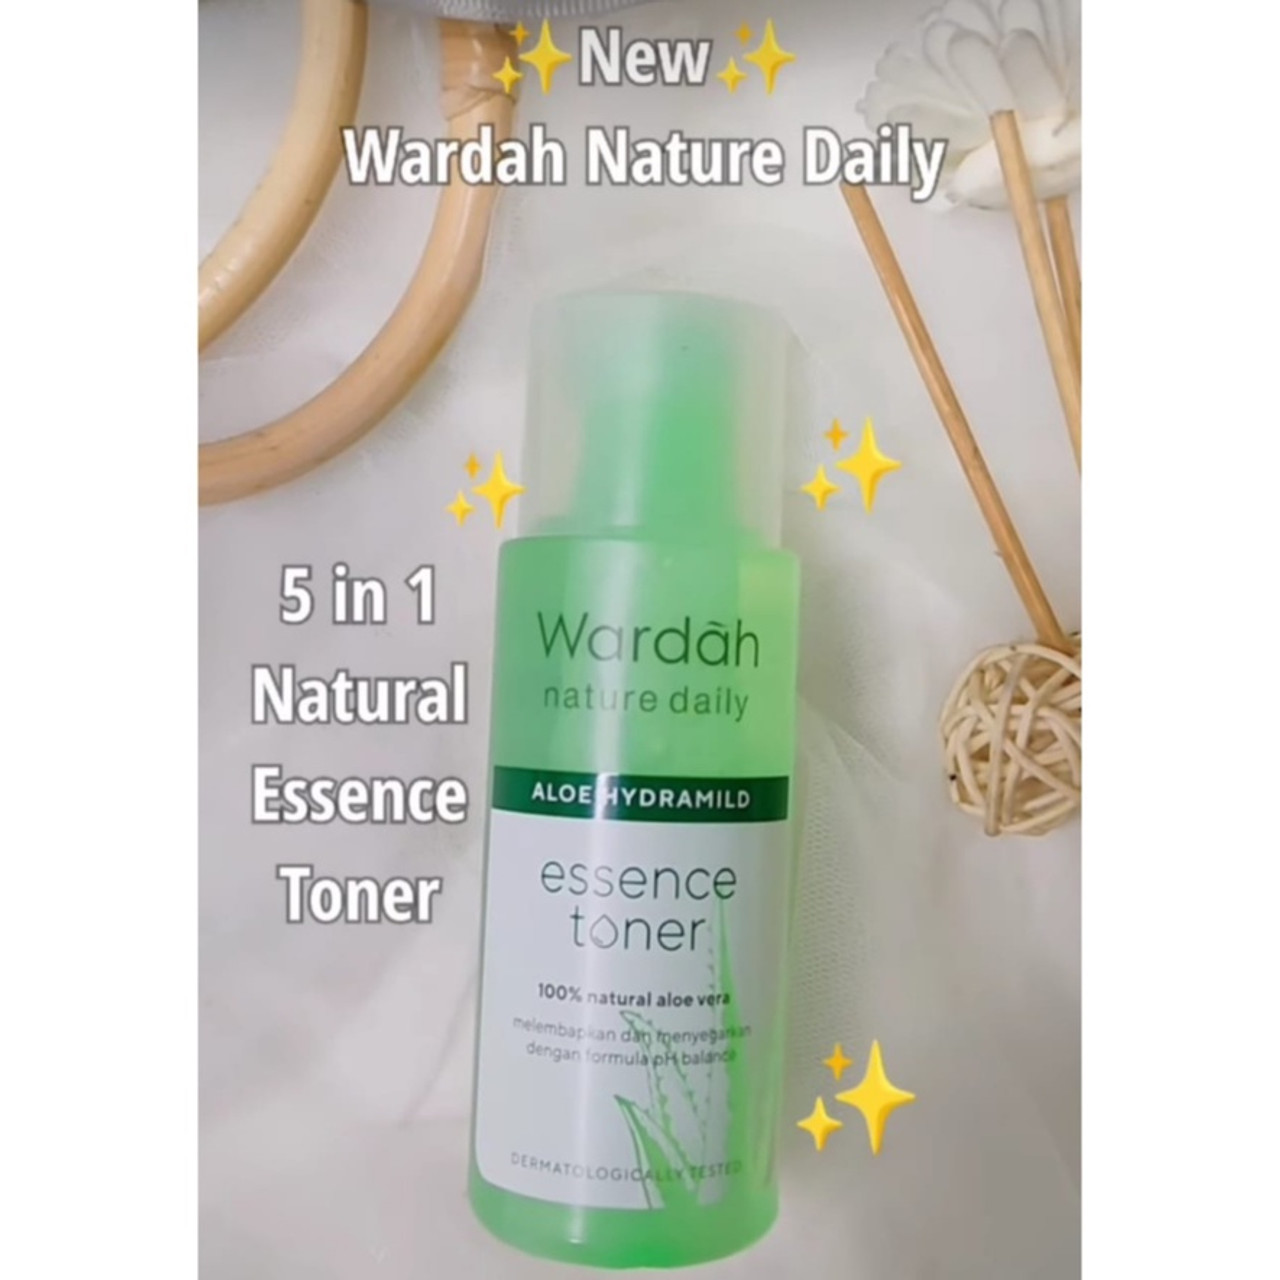 Wardah Nature Daily Aloe Hydramild Essence Toner, 100 ml